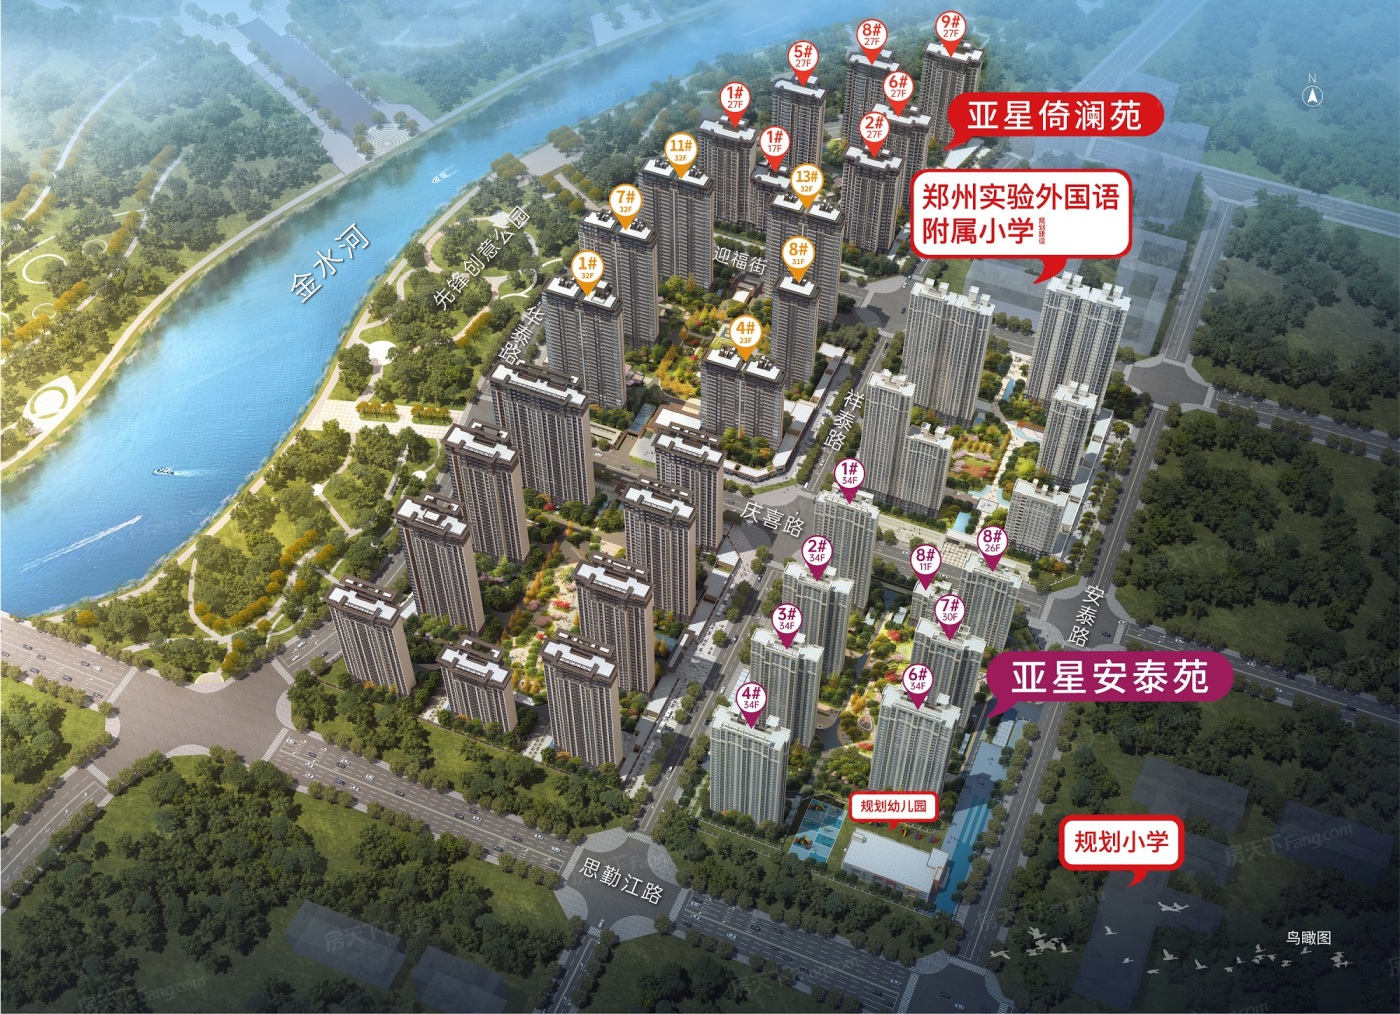 置业顾问亲自带你看郑州 二七区 热门楼盘05月最新动态！